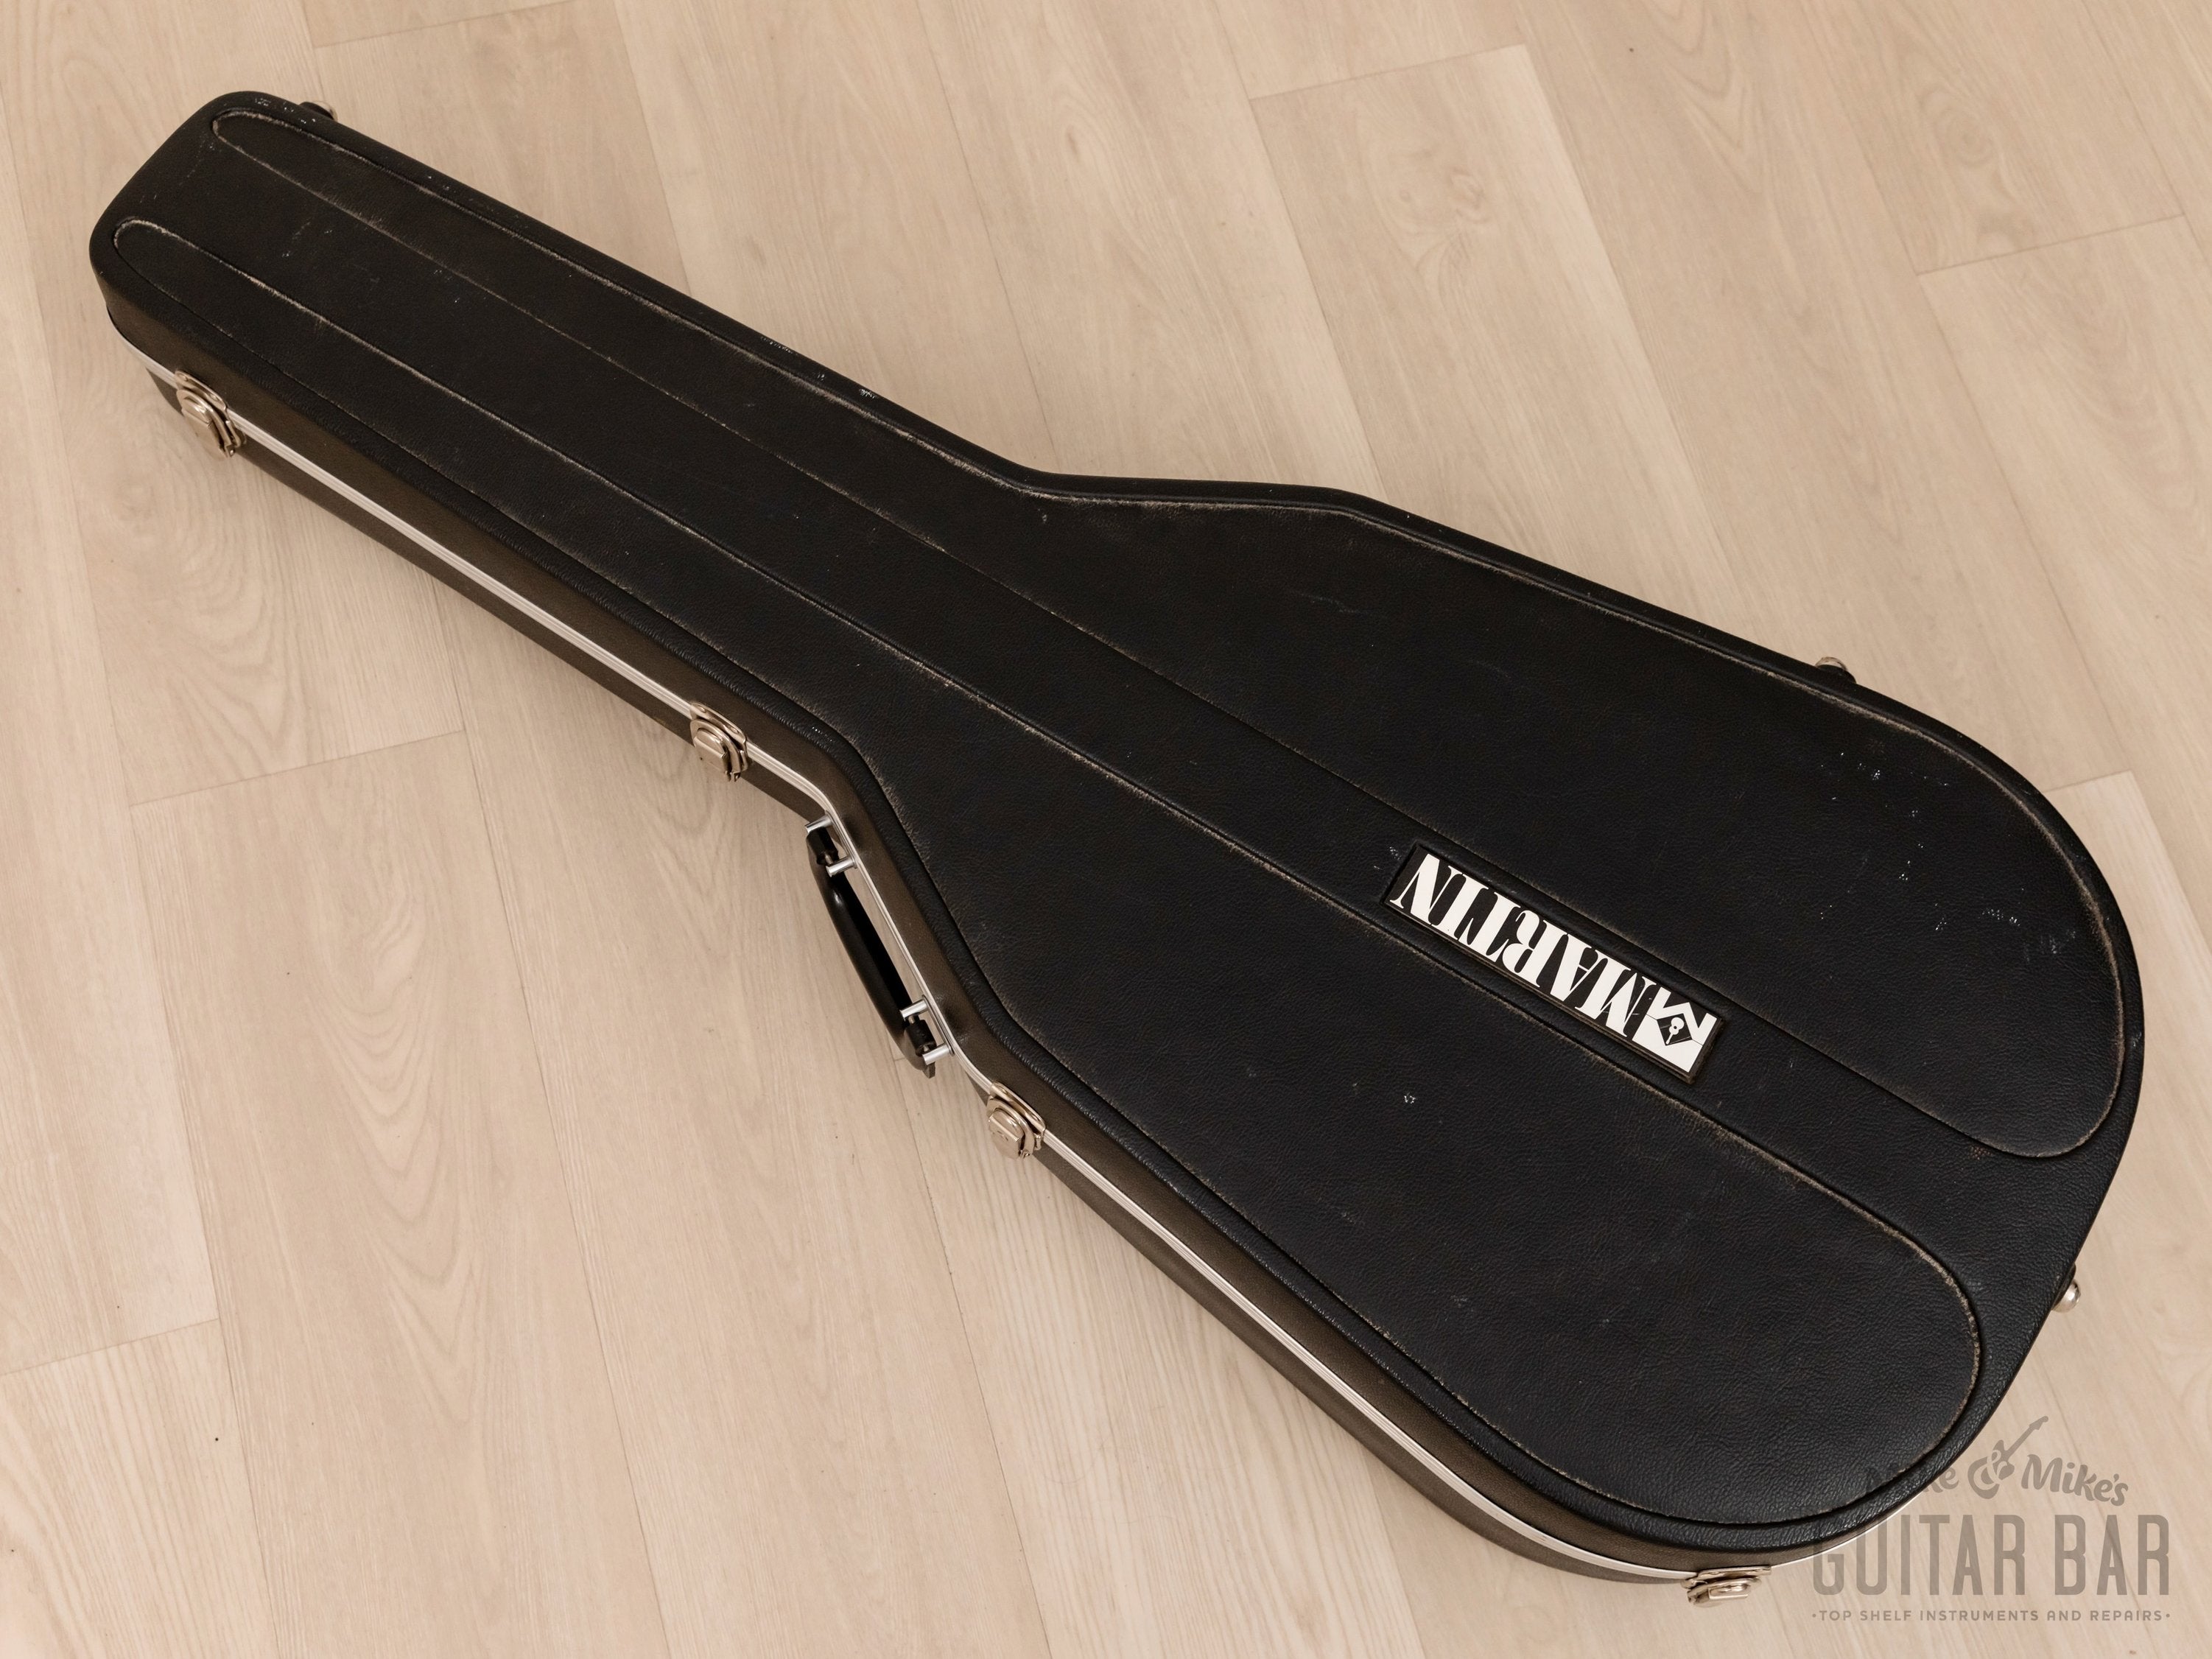 1973 Martin D-28 Vintage Dreadnought Acoustic Guitar w/ Case